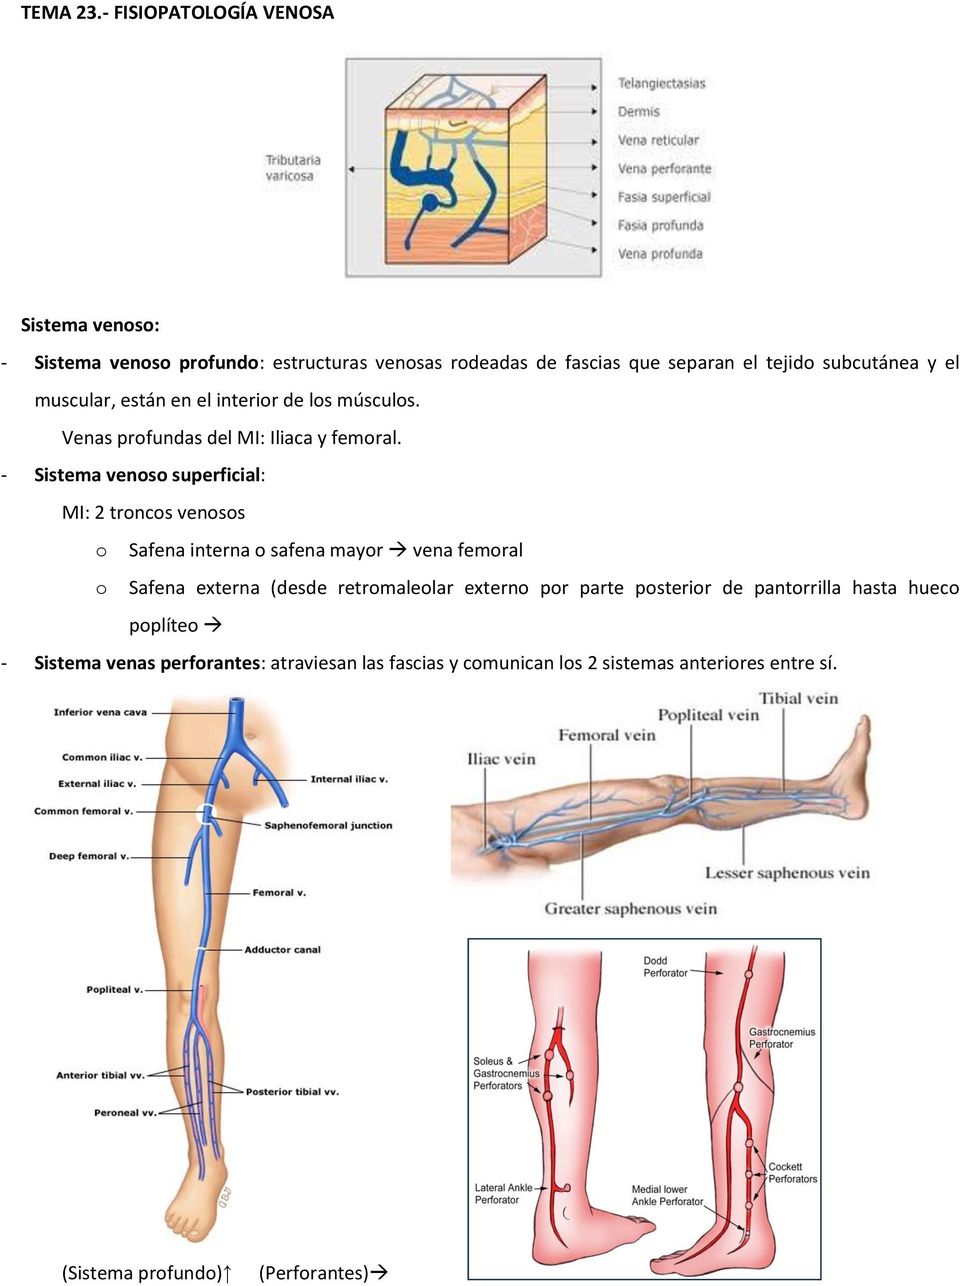 el muscular, están en el interior de los músculos. Venas profundas del MI: Iliaca y femoral.